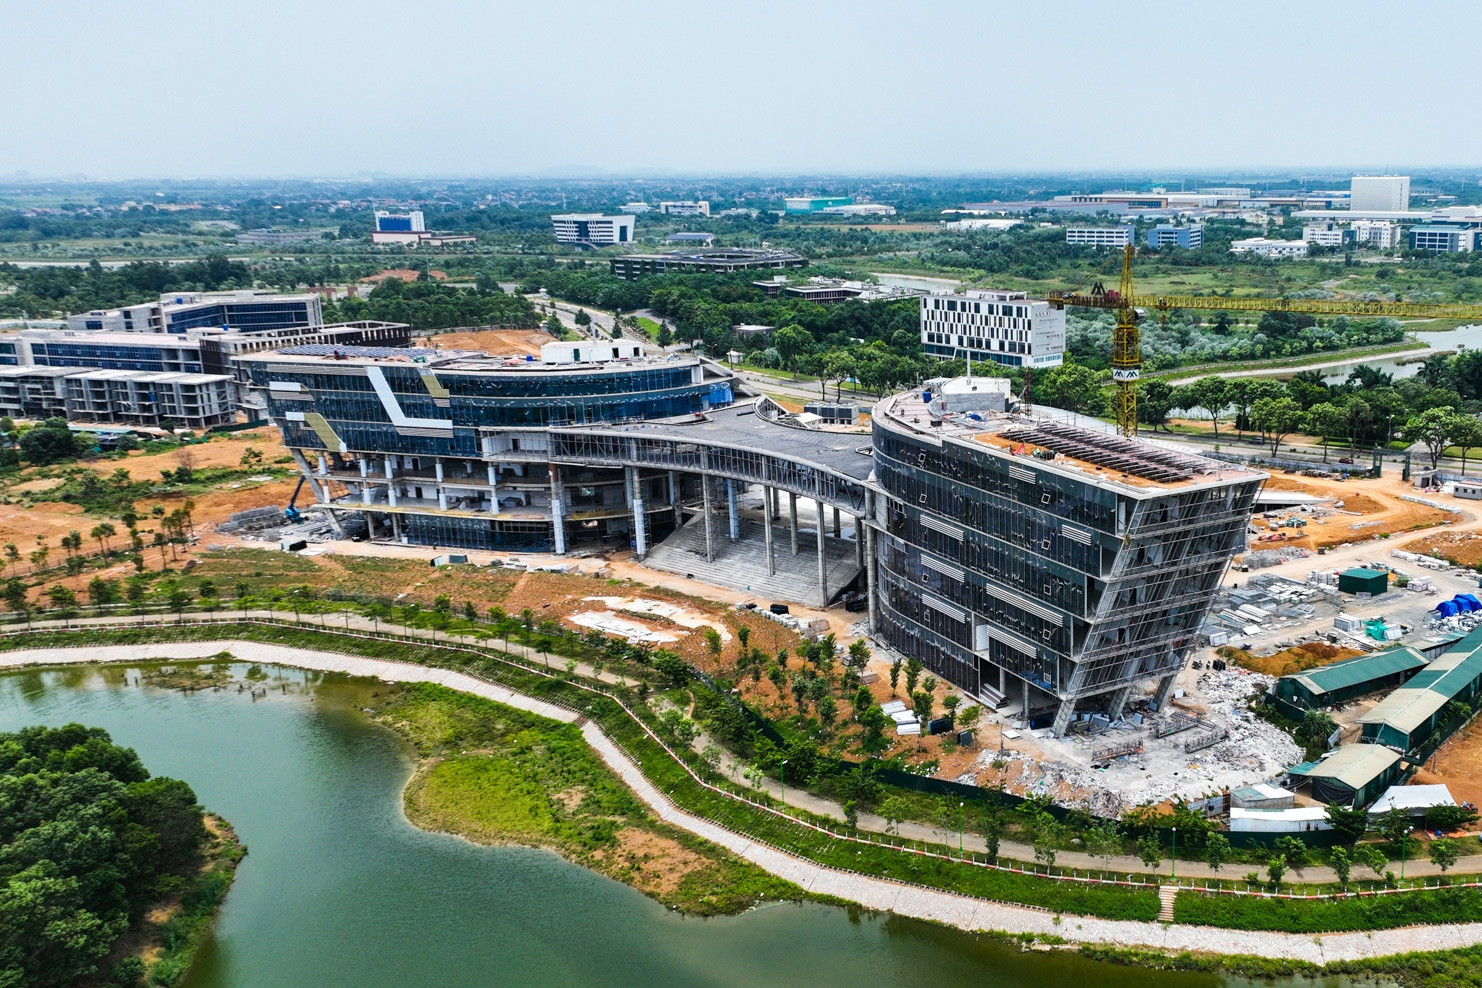 Hòa Lạc, đô thị vệ tinh lớn nhất trong 5 thành phố mới của Hà Nội